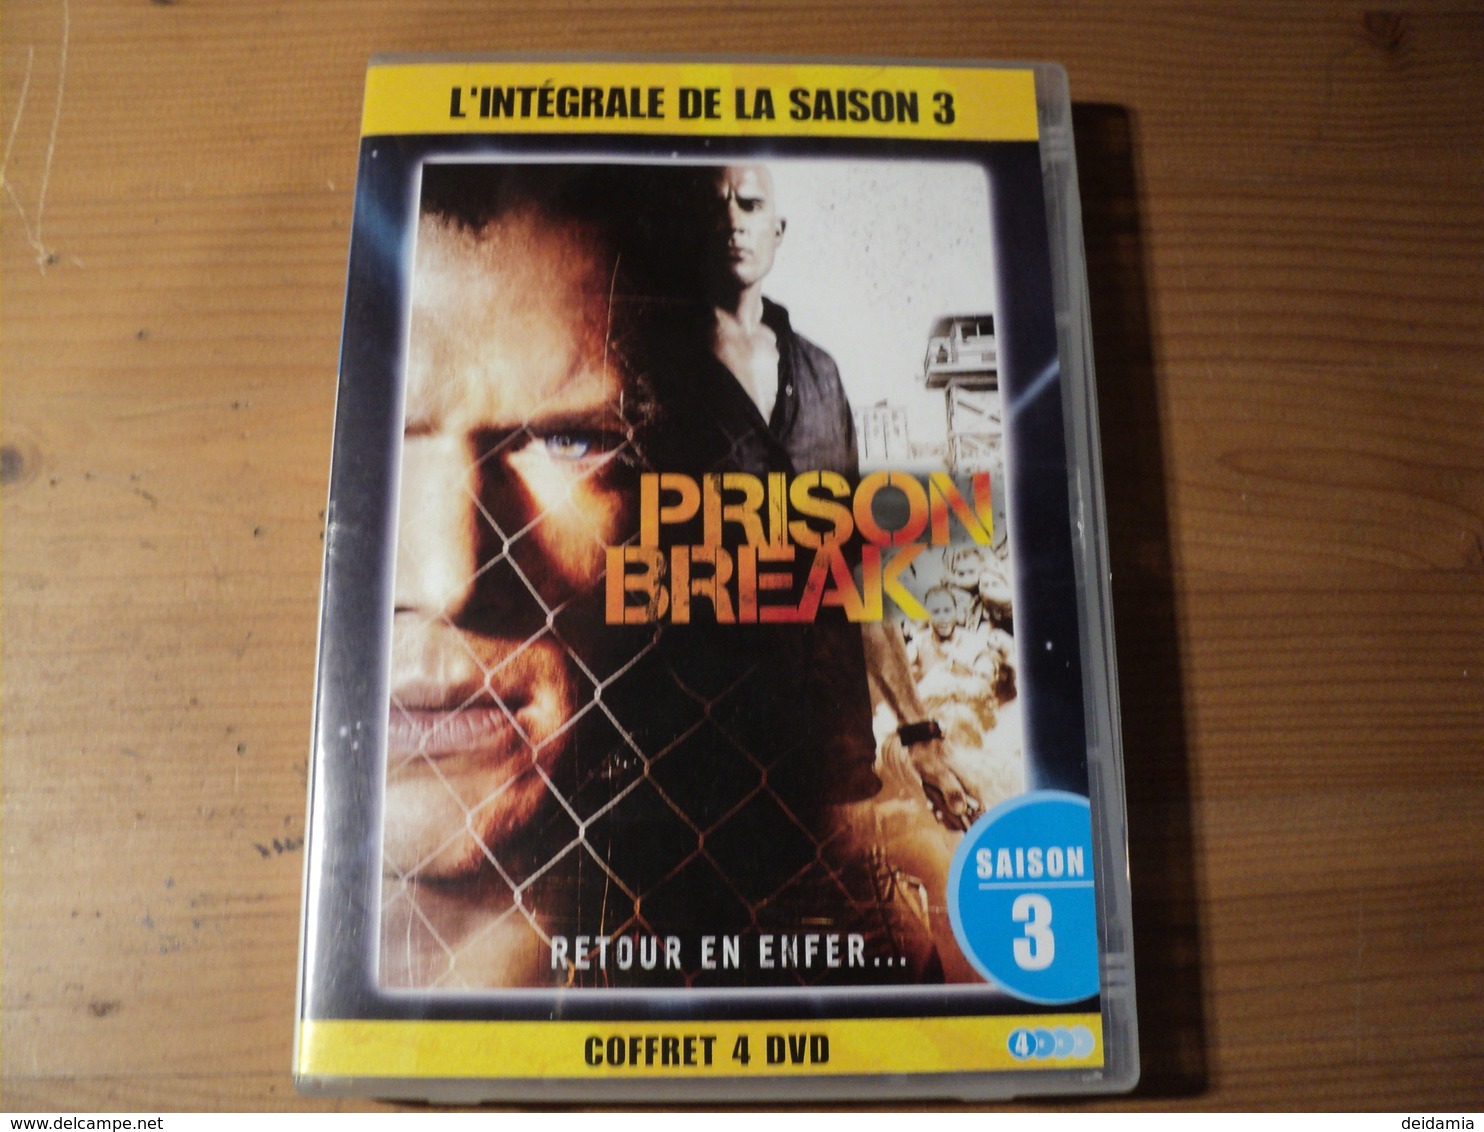 INTEGRALE PRISON BREAK SAISON 3. RETOUR EN ENFER... 2010 4 DVD POUR 13 EPISODES. - Séries Et Programmes TV